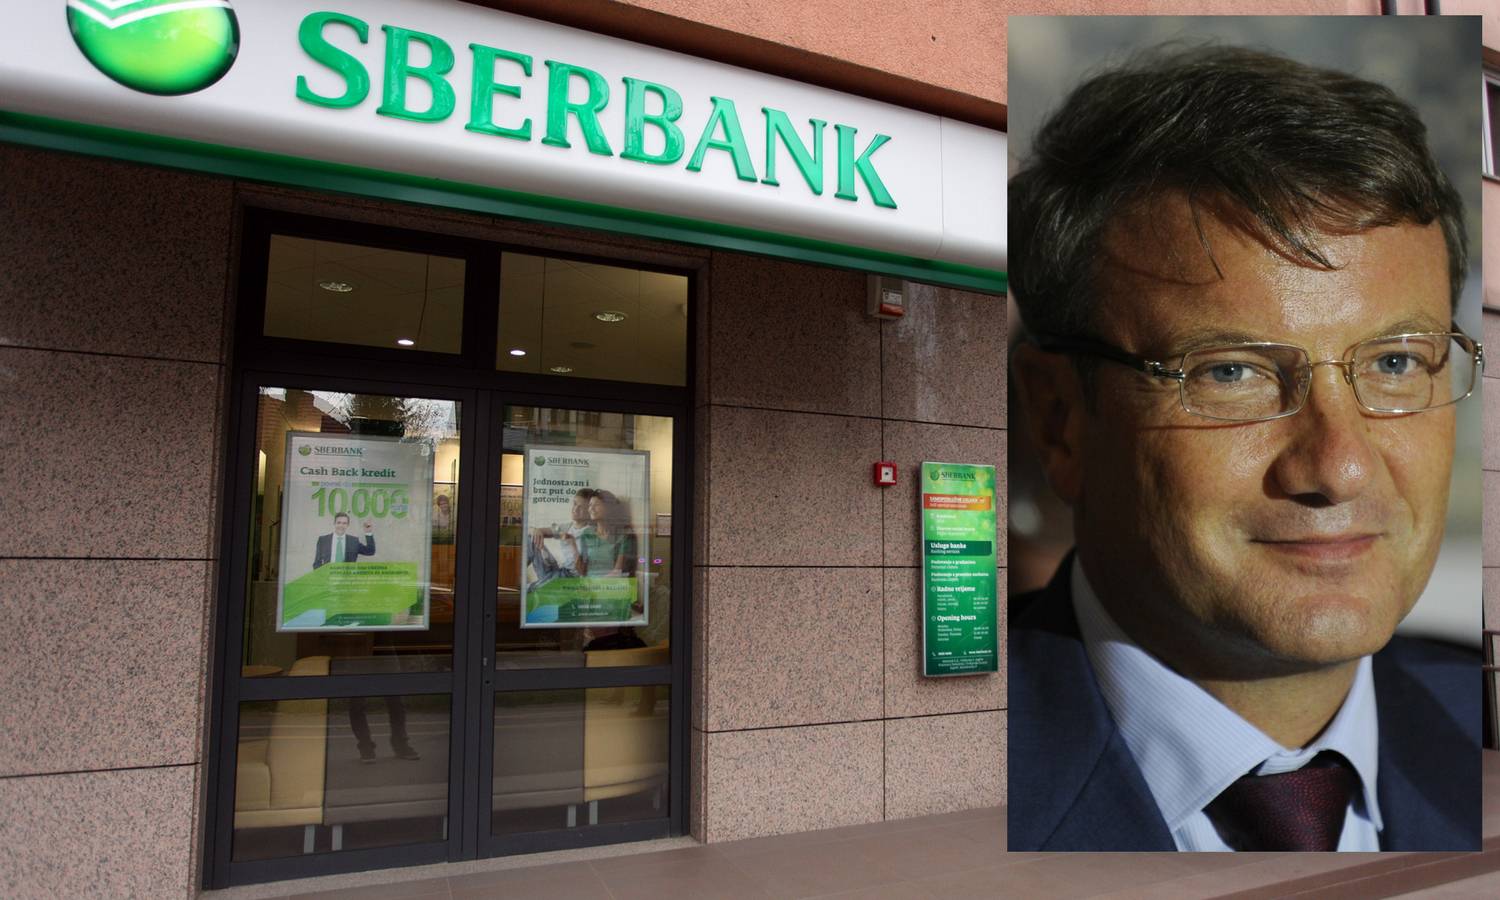 Gref: Isključivanje Sberbanka iz Vjerovničkog vijeća je ucjena